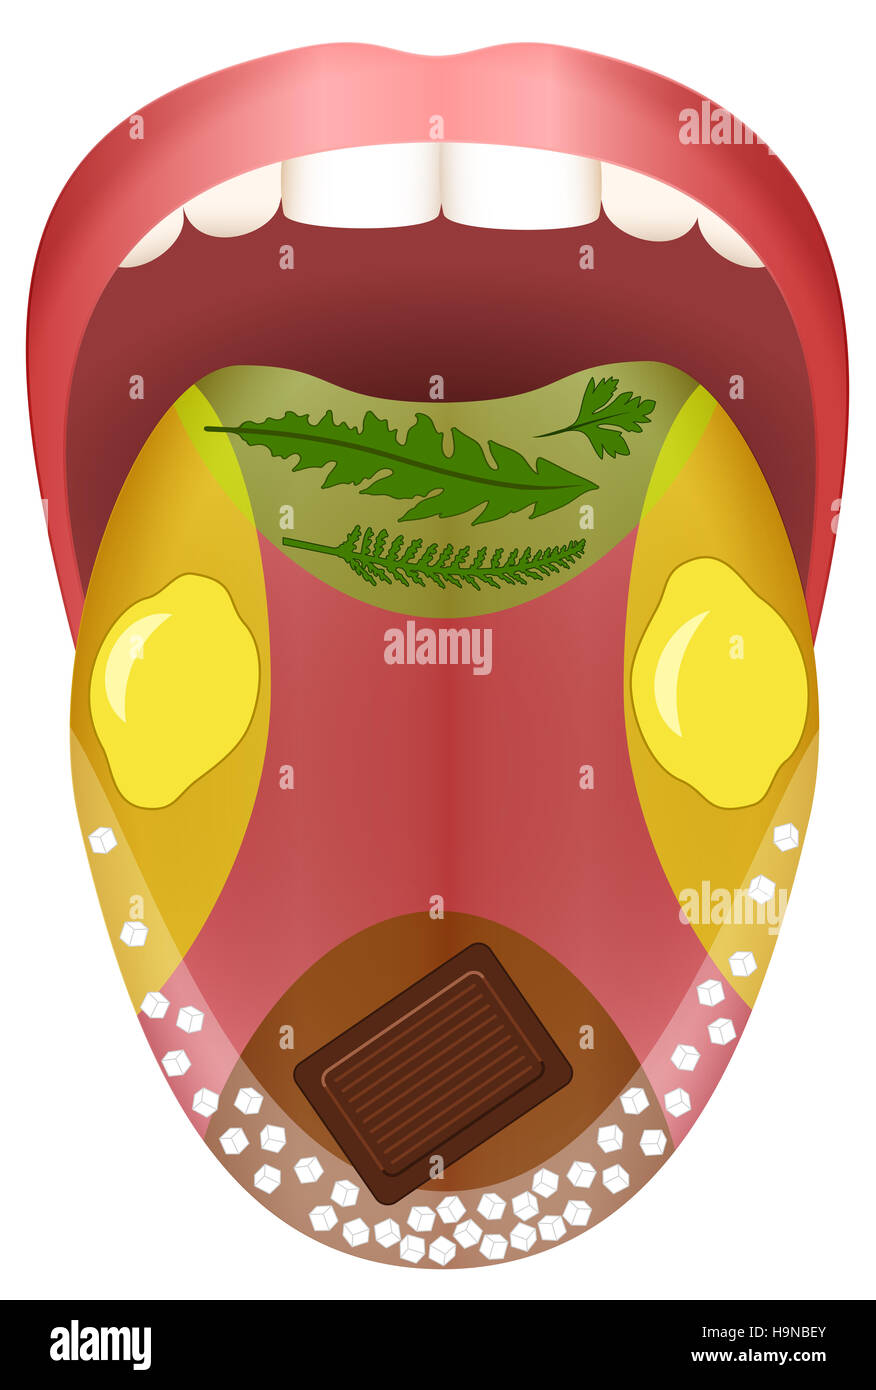 Zunge - vier Bereiche - bitter schmecken, sauer, süß und salzig durch Kräuter, Zitronen, Schokolade und Salzkörner dargestellt. Stockfoto